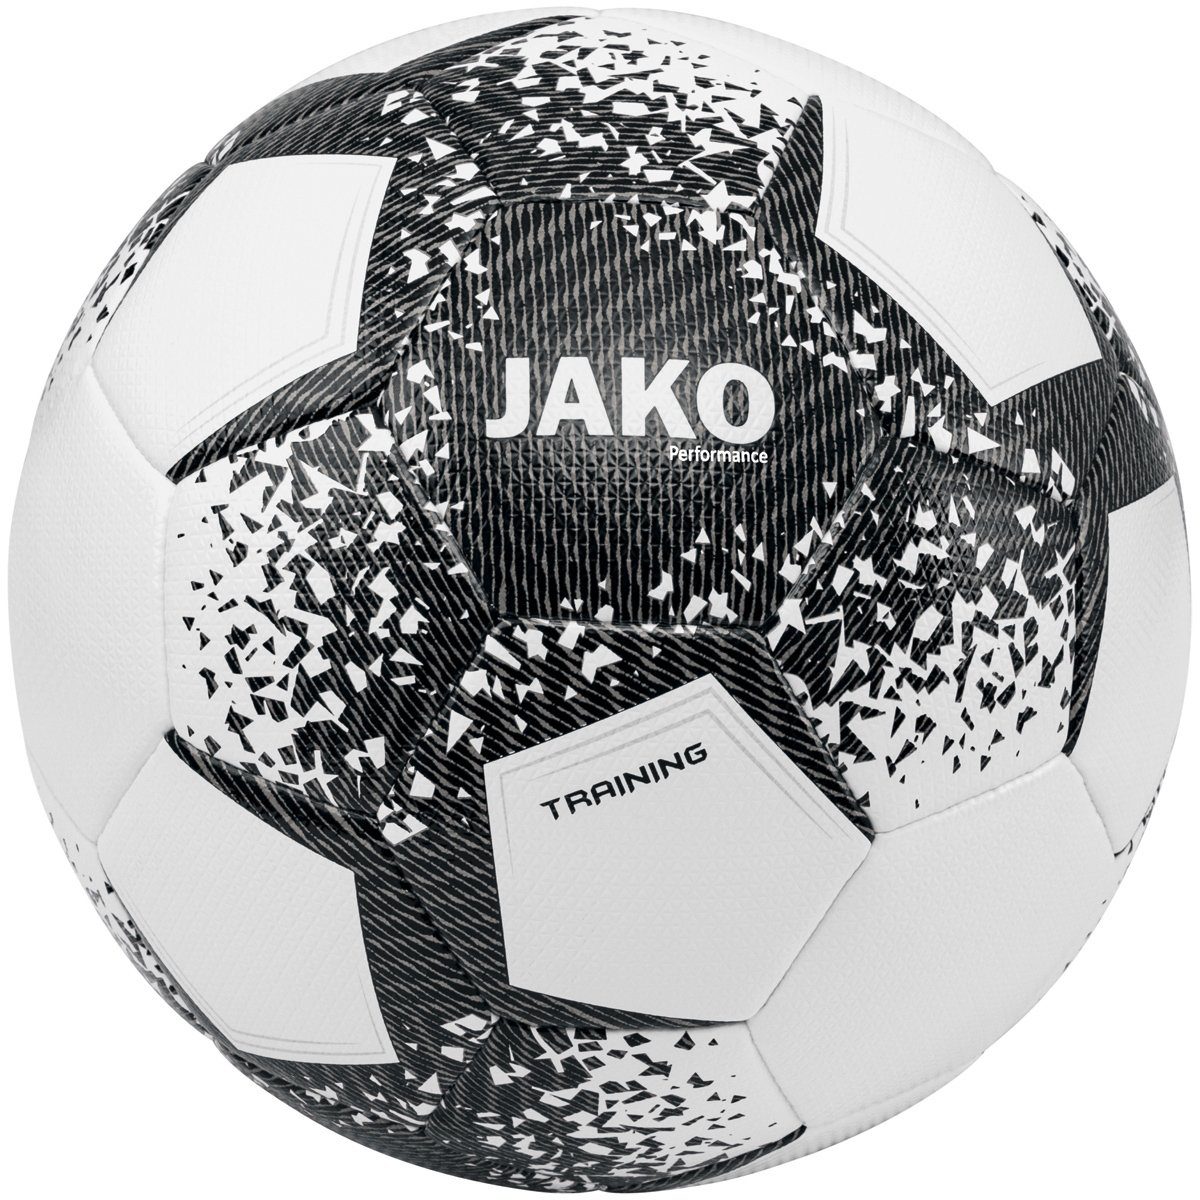 Jako Fußball Ball Performance - 2301 Trainingsball (Ganzjahresartikel) weiss/schwarz/steingrau